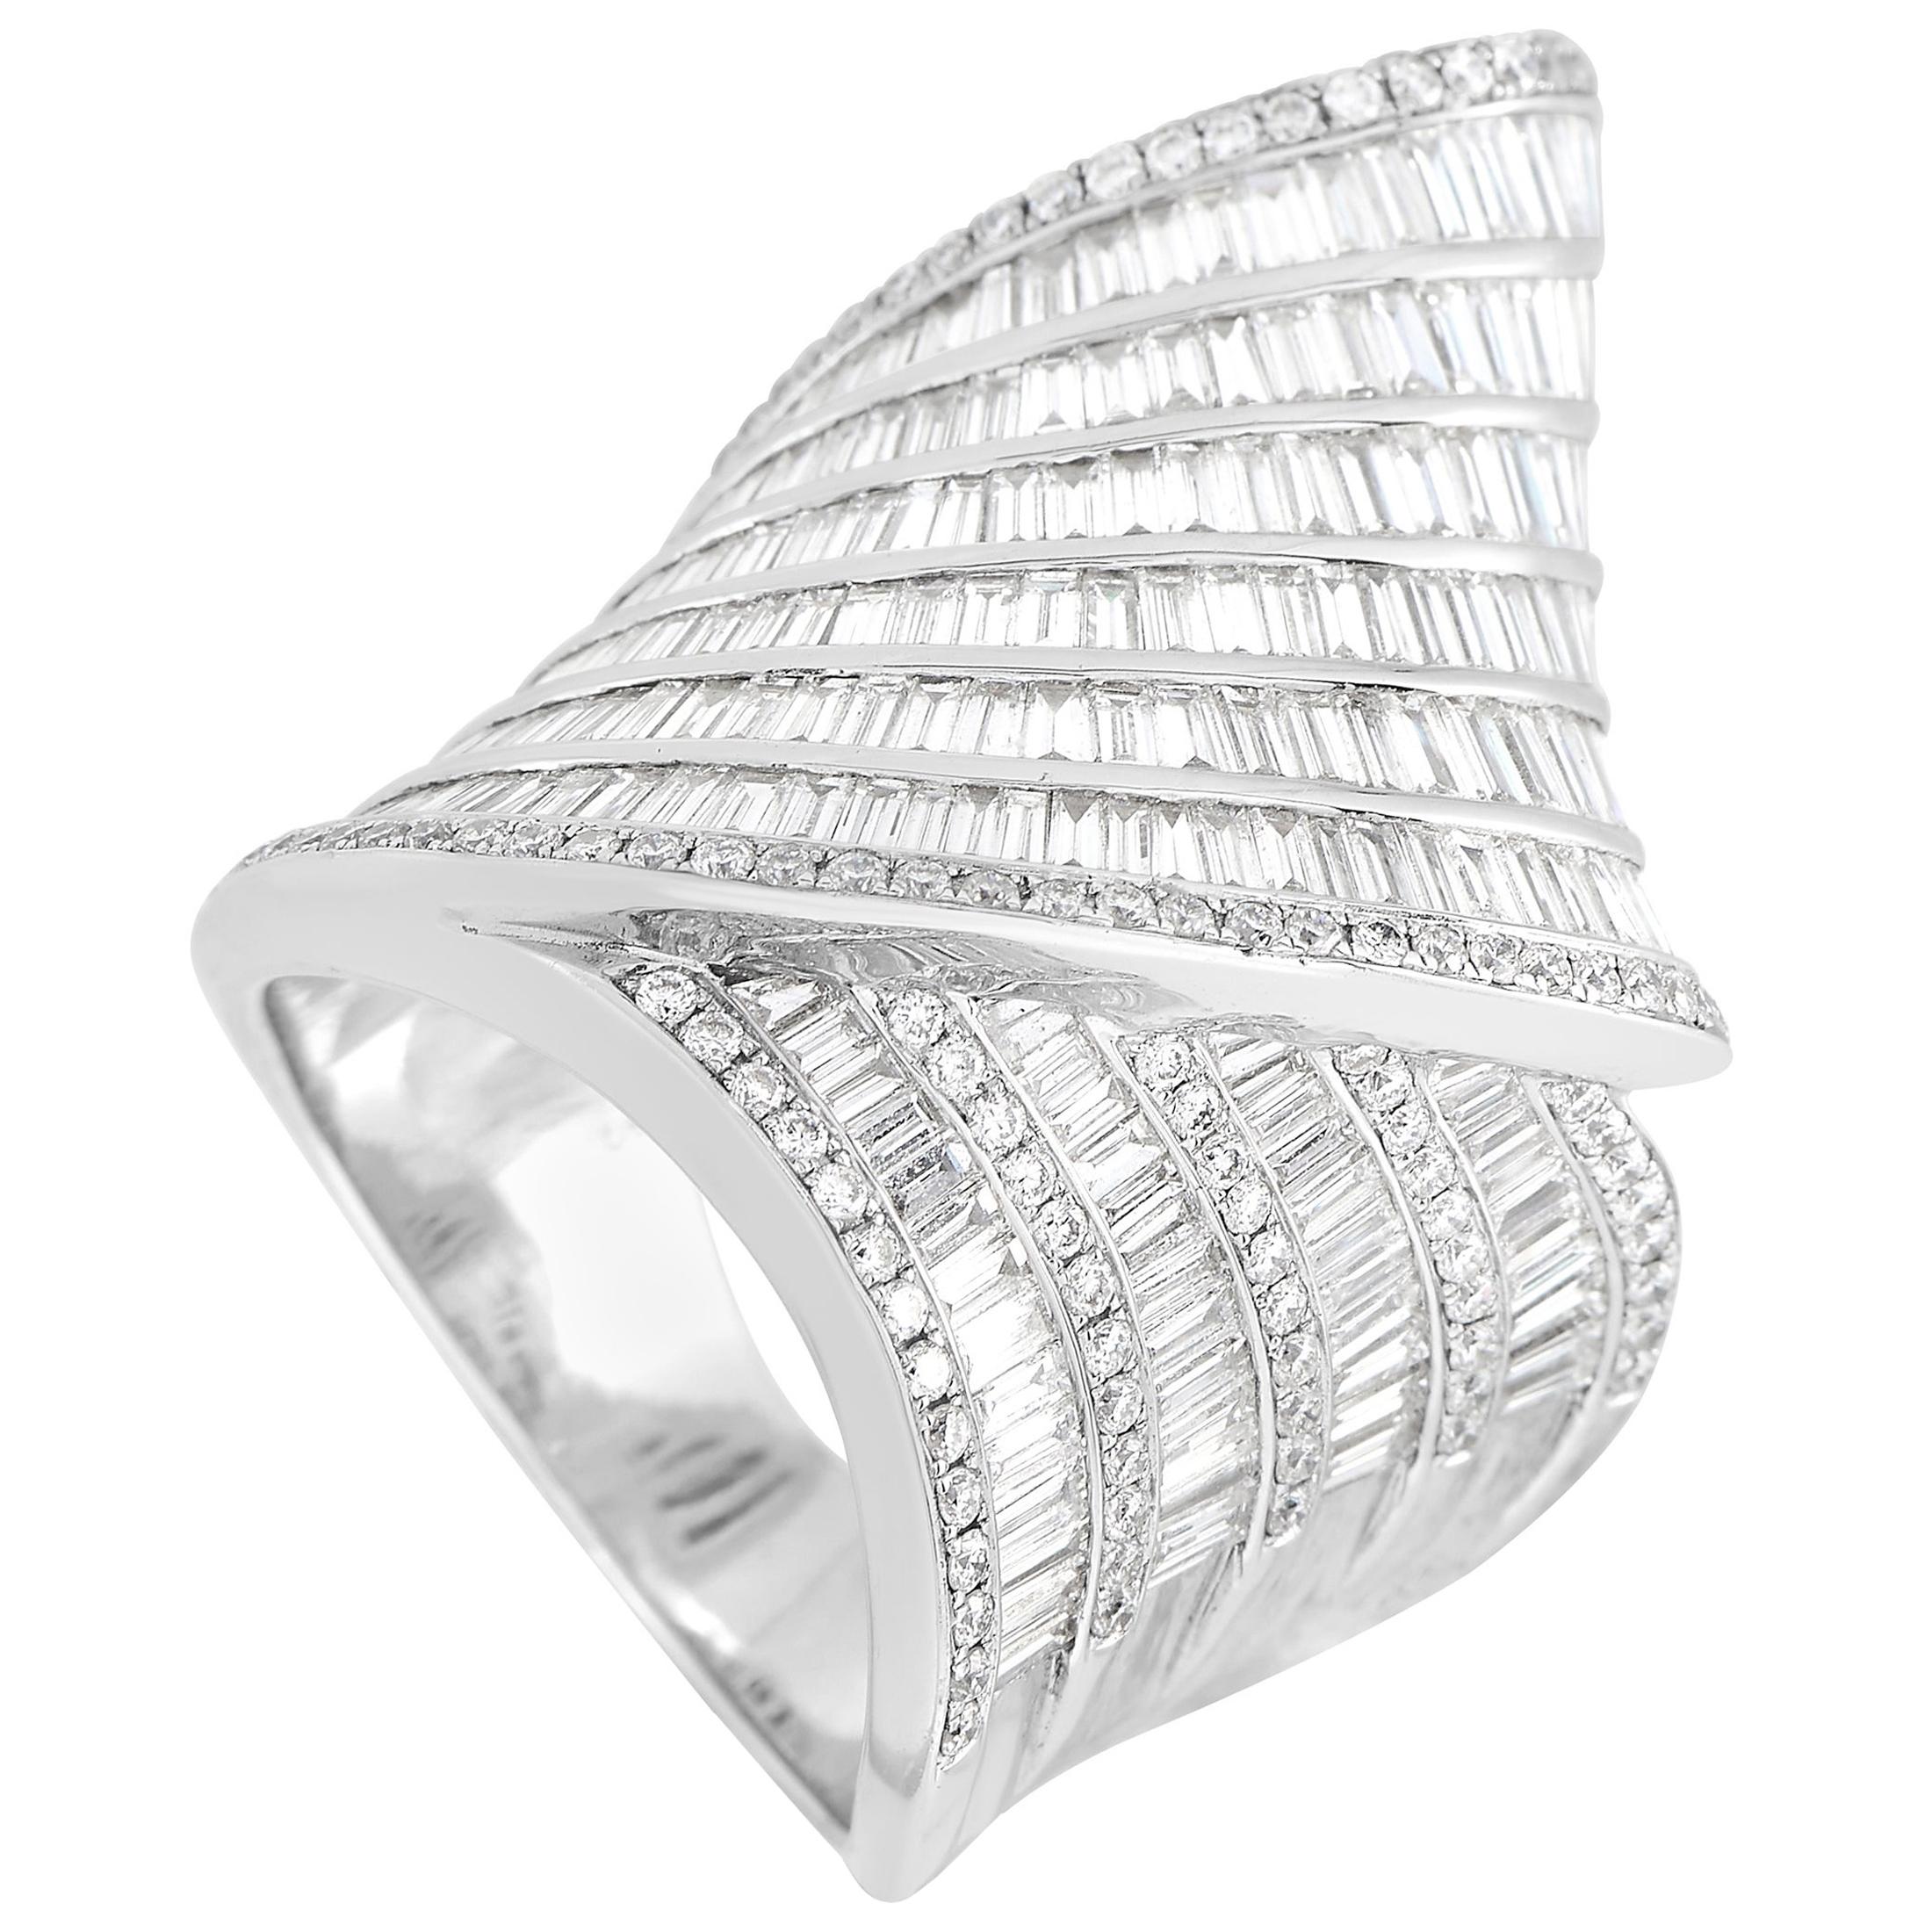 LB Exclusive 18 Karat White Gold 4.70 Carat Diamond Ring